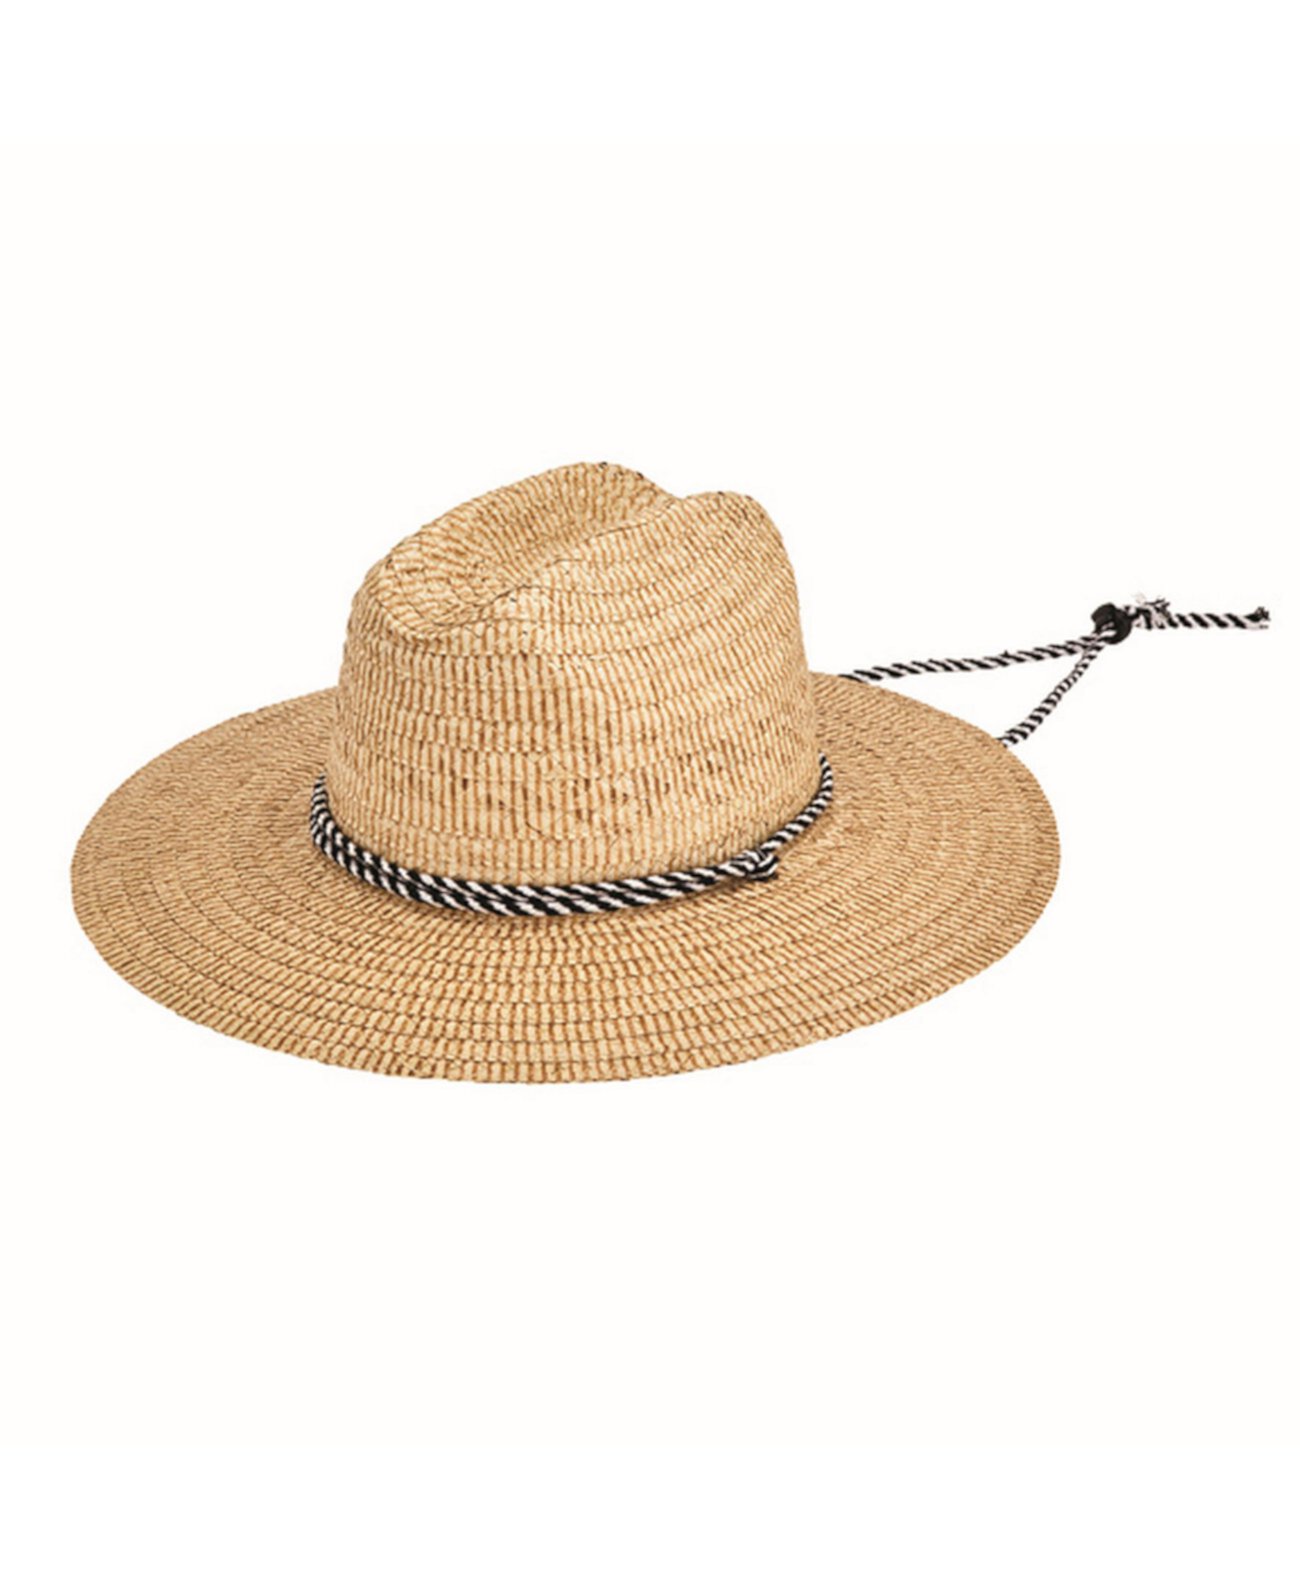 Мужская соломенная плетеная шляпа спасателя Kwai San Diego Hat Company